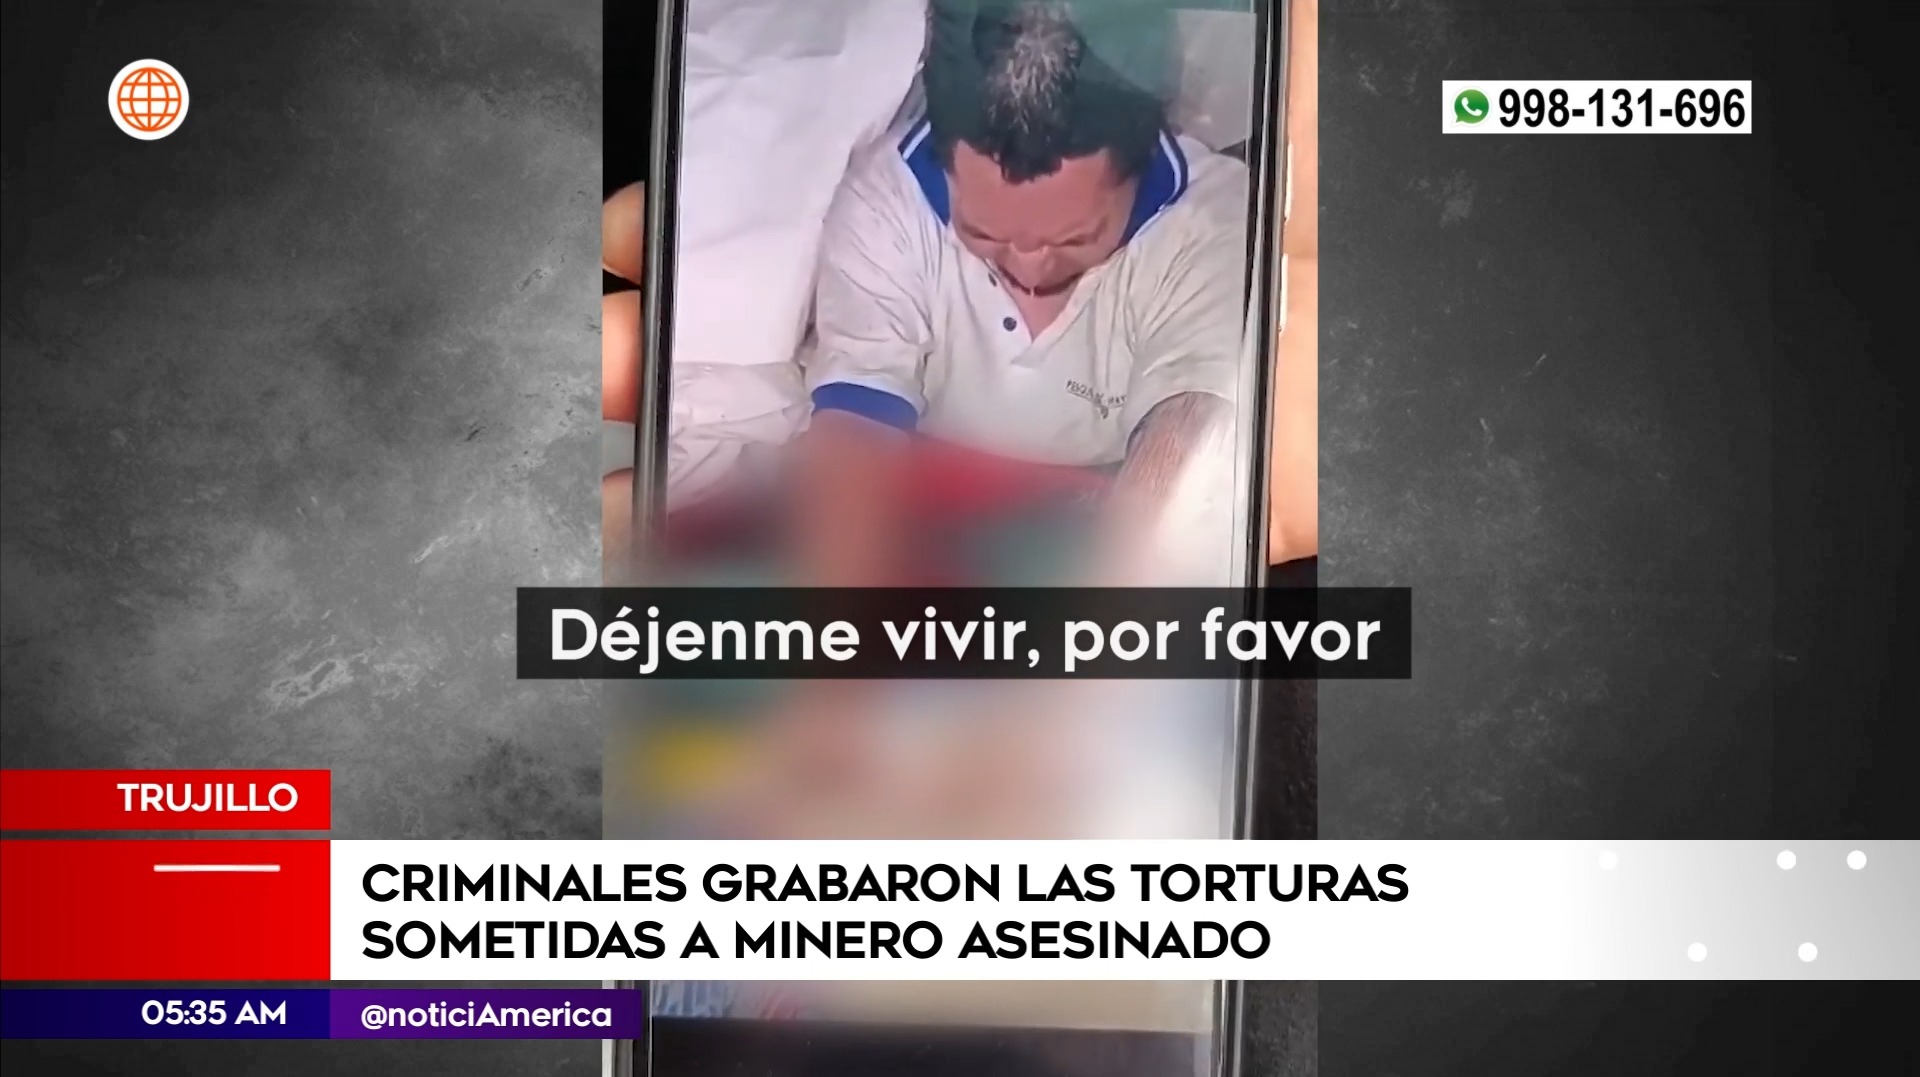 Criminales torturaron a minero asesinado en Trujillo. Foto: América Noticias